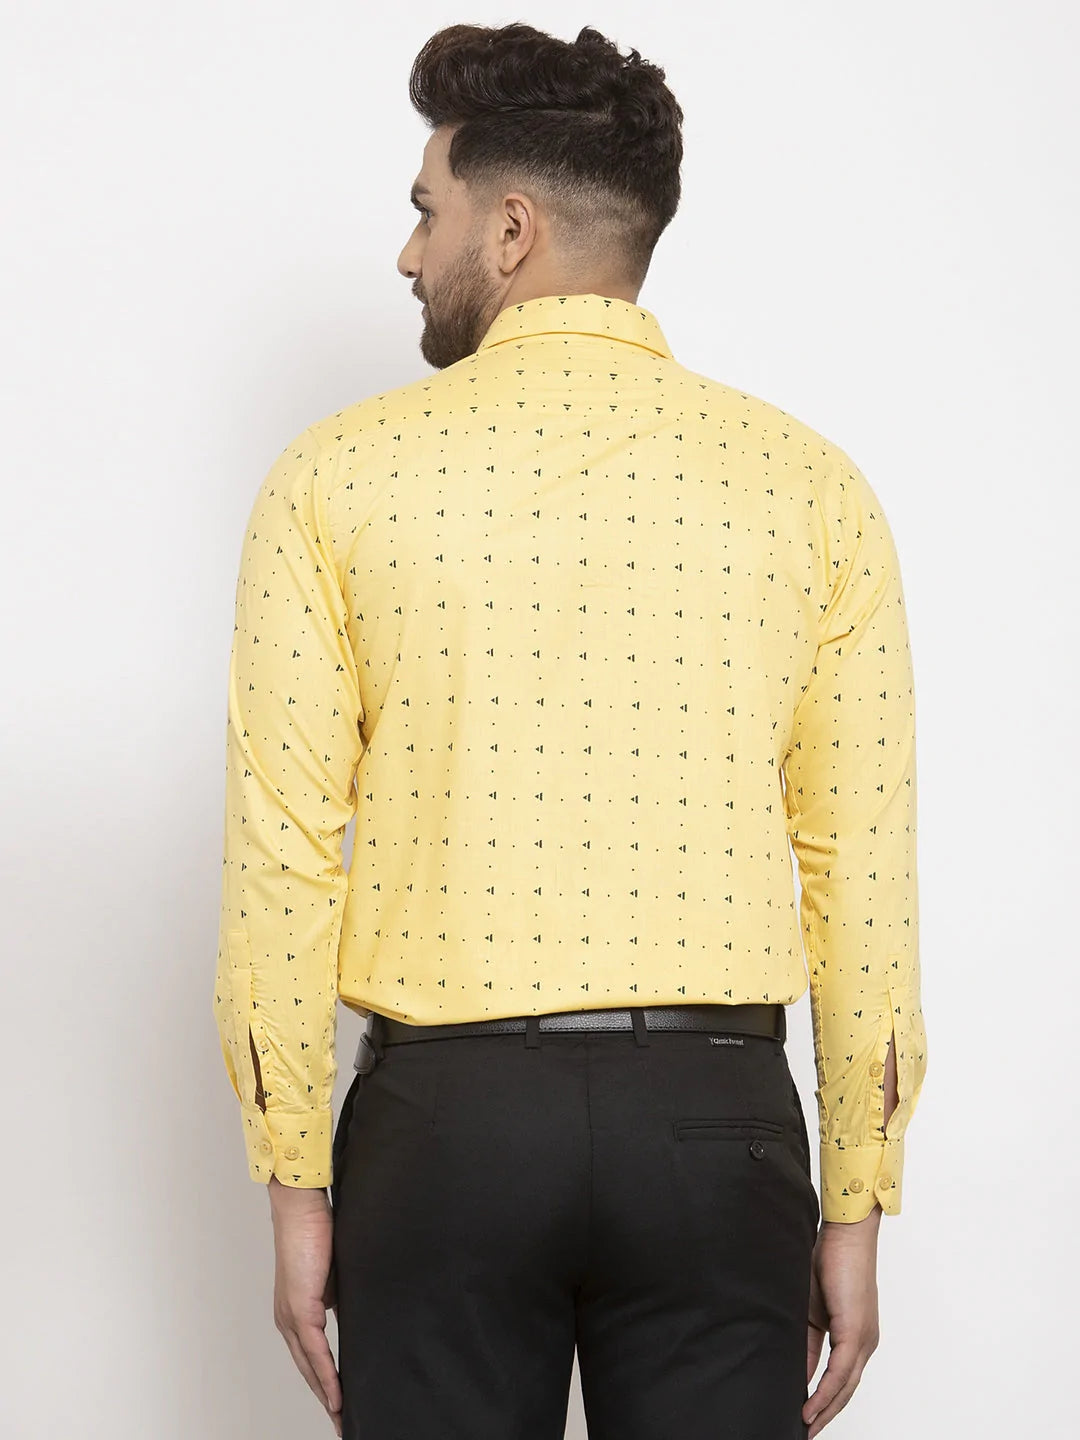 Jainish Yellow Men's Cotton Printed Formal Shirt's ( SF 766Yellow )